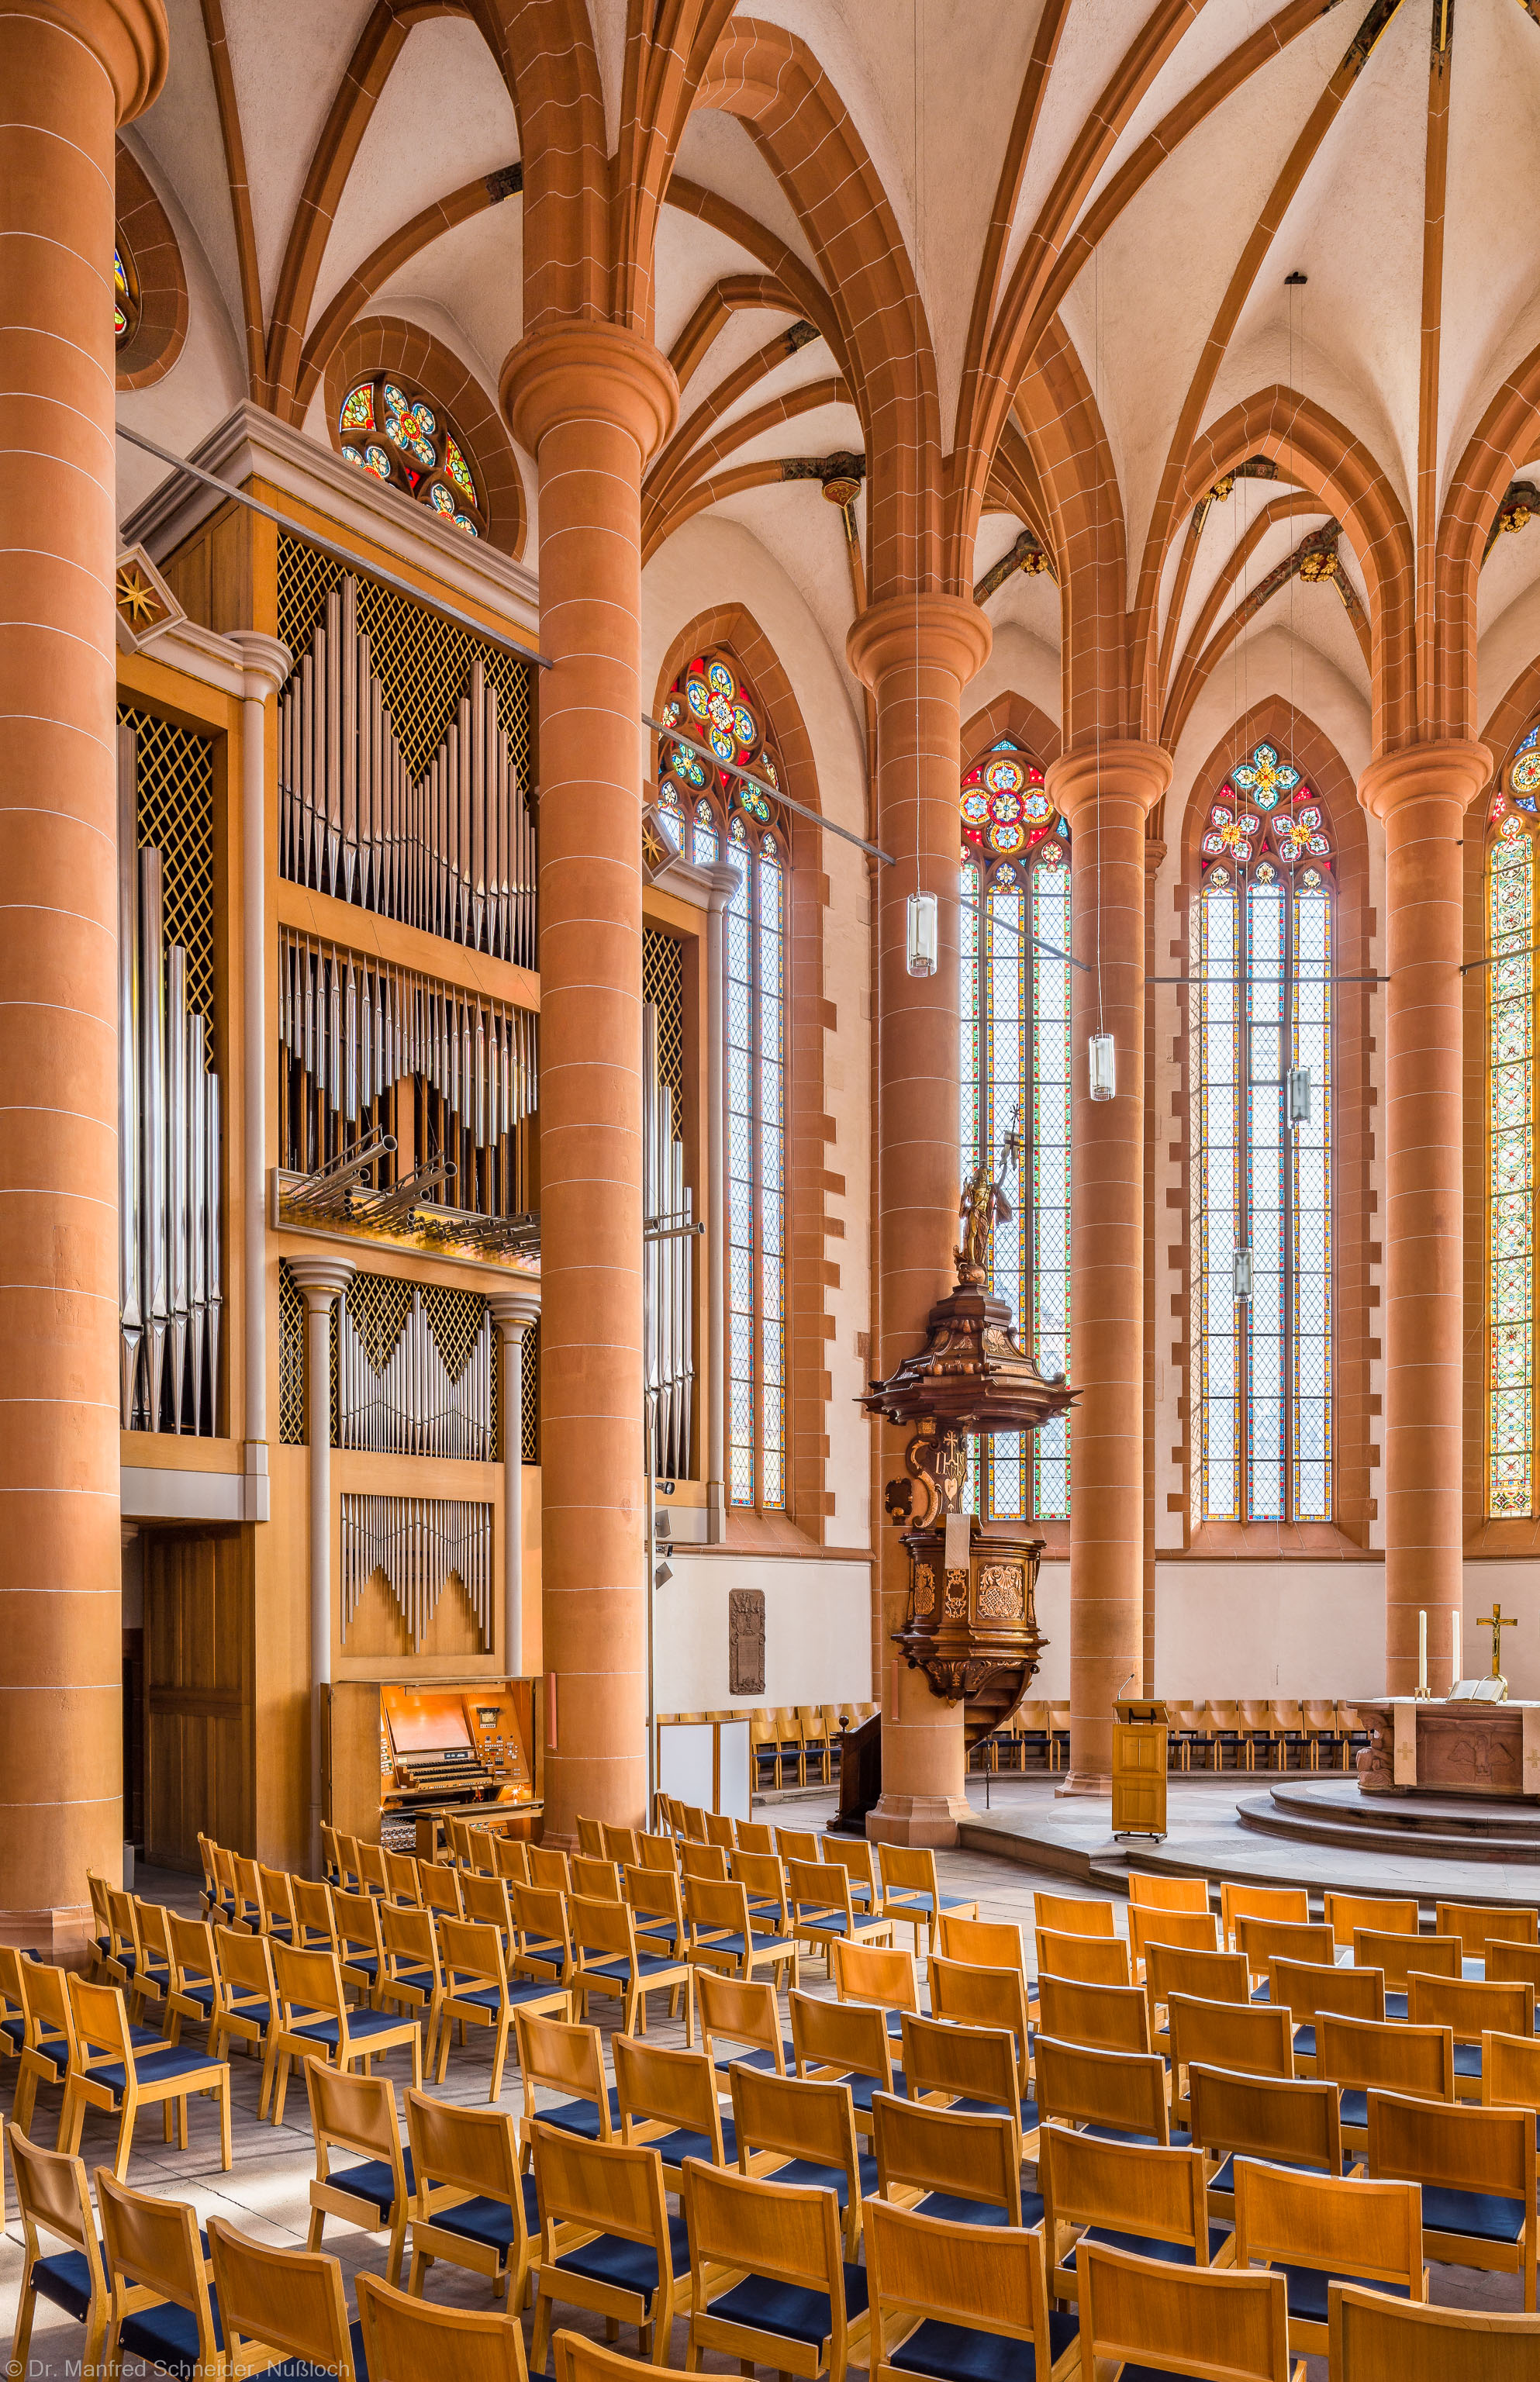 Heidelberg - Heiliggeistkirche - Chor - Blick in den Chor nach Nordosten mit Säulen, Gewölbe, Orgel, Kanzel und Altar (aufgenommen im April 2013, am frühen Vormittag)